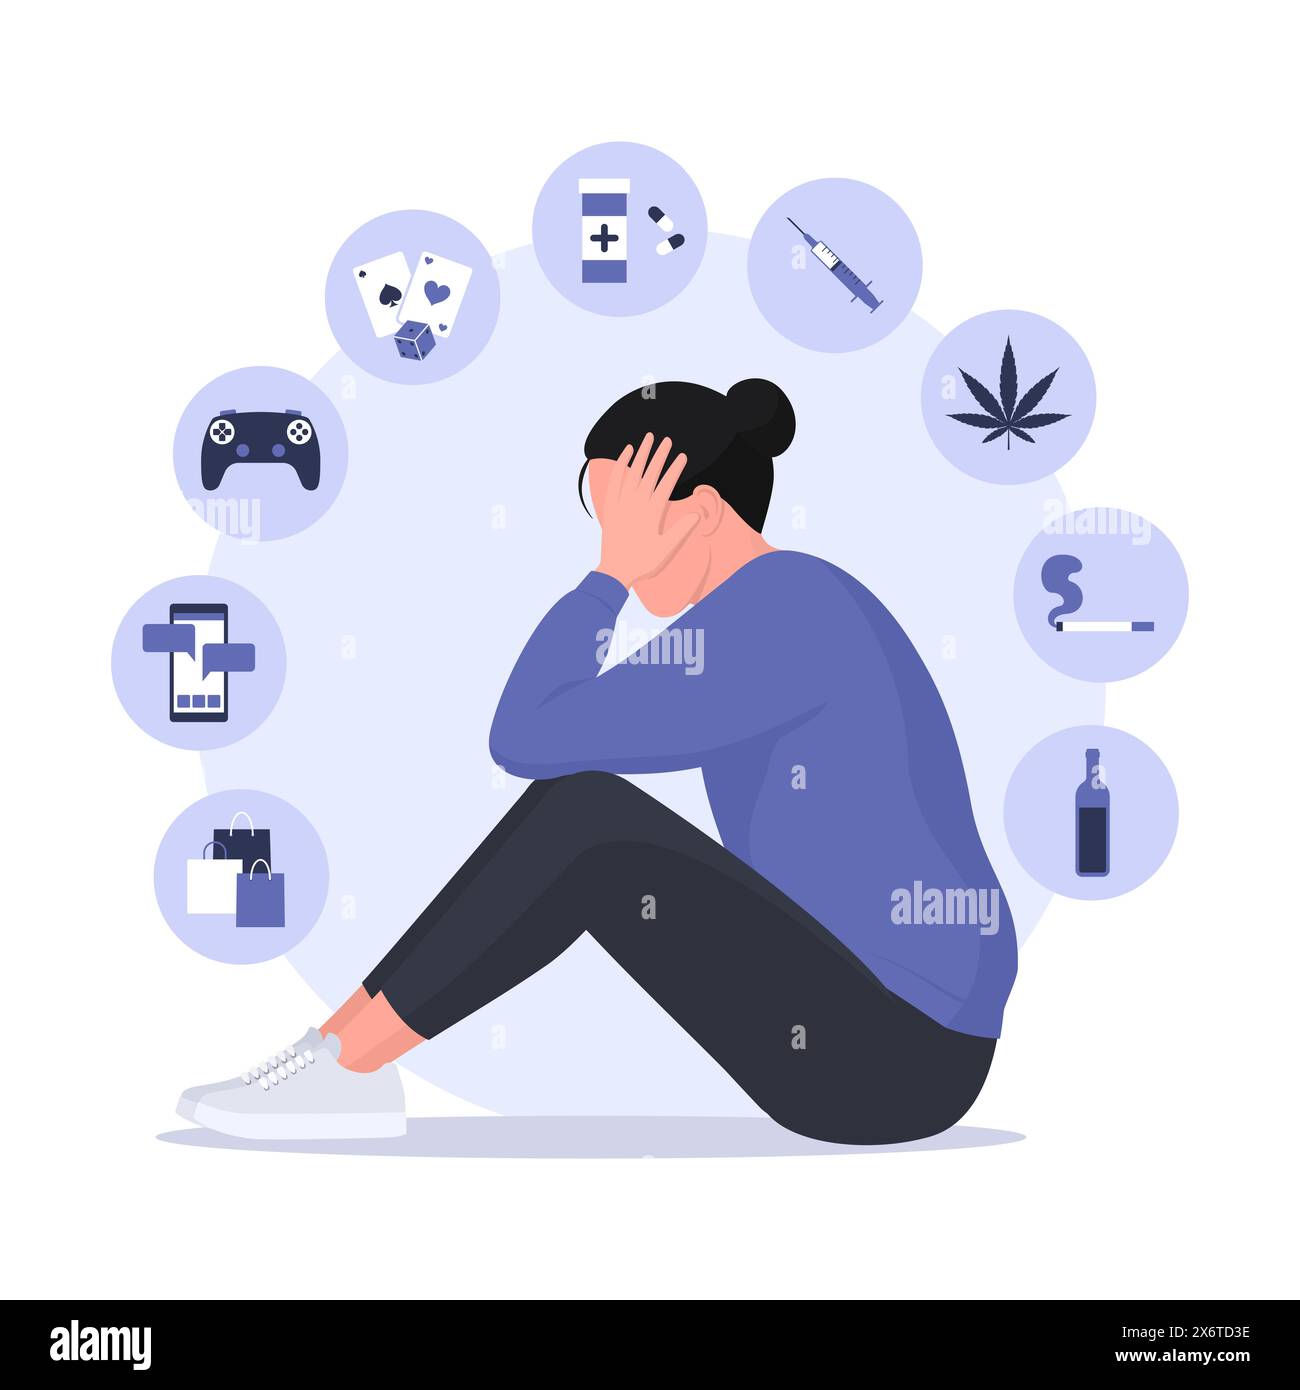 Infographie des types d'addictions avec icônes et femme déprimée : concept de troubles mentaux Illustration de Vecteur